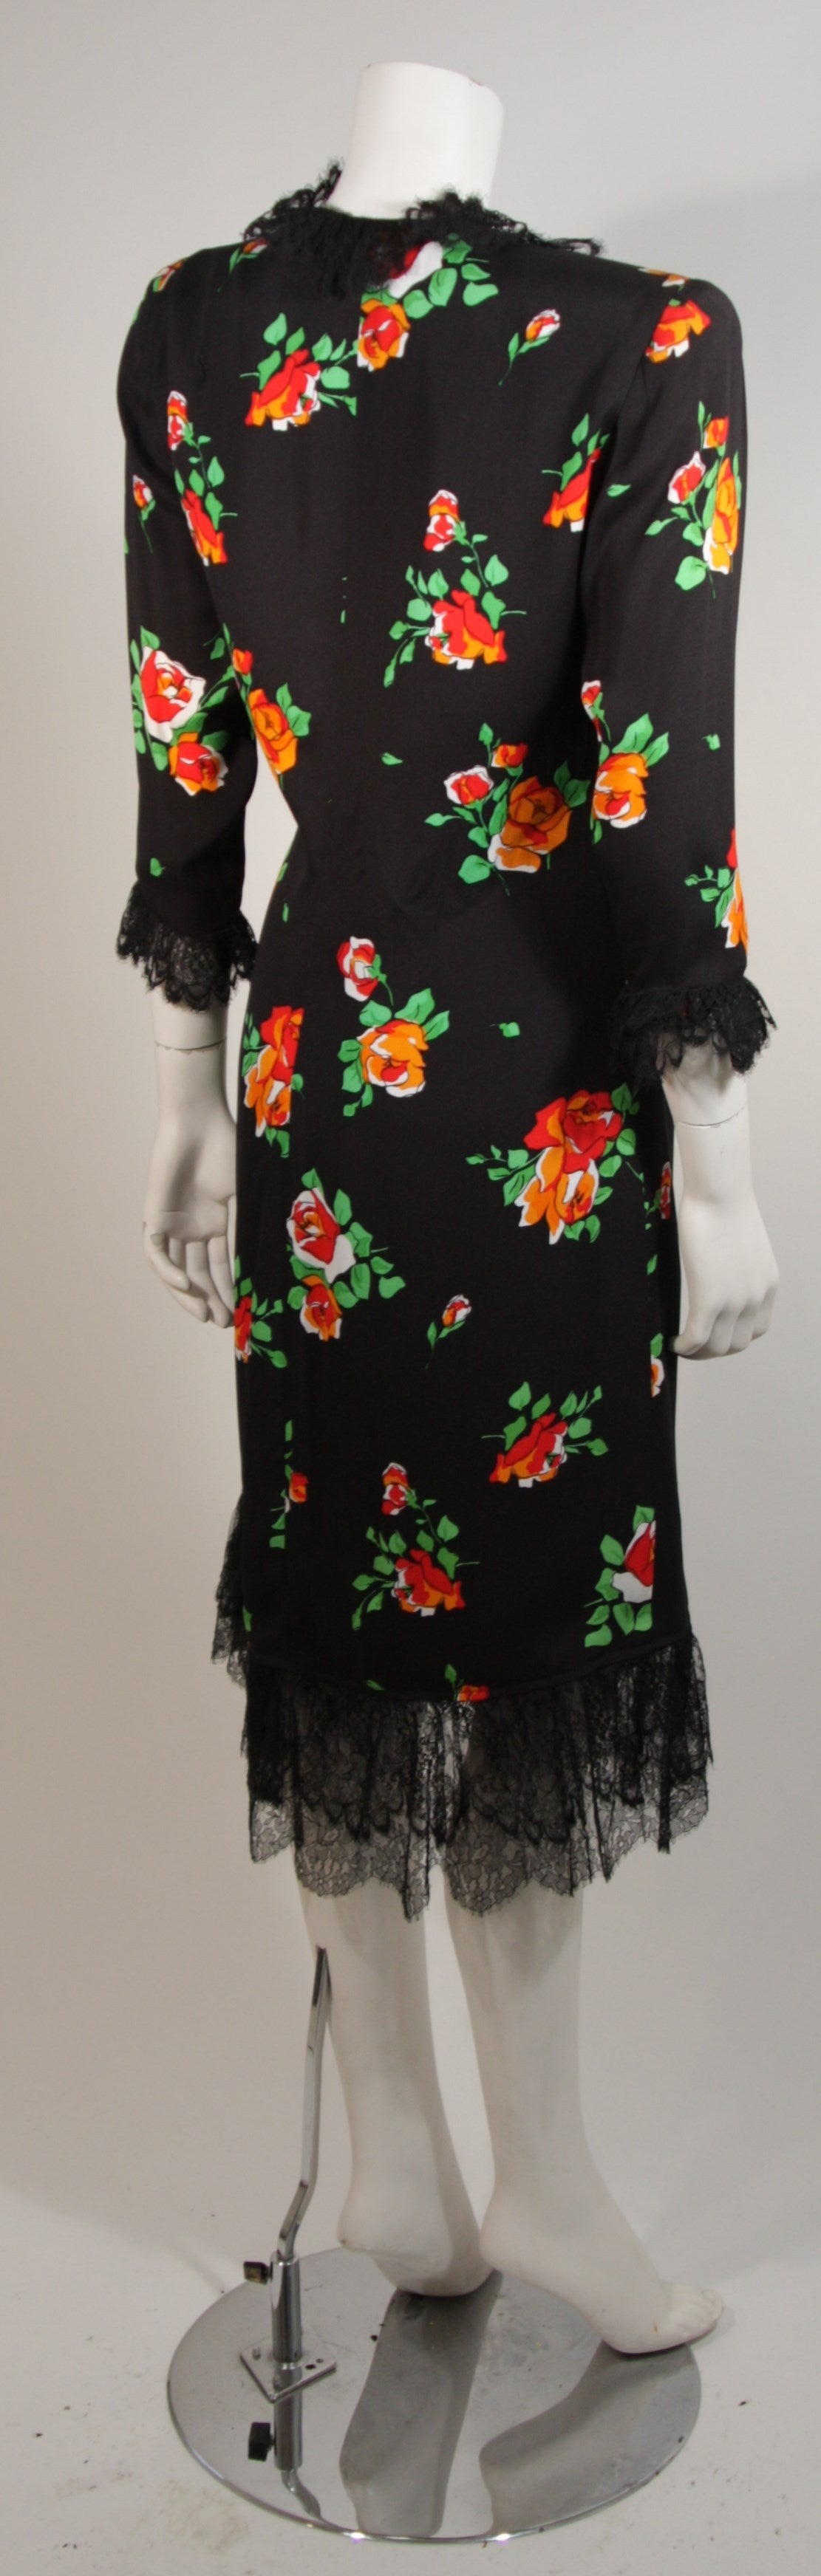 Saint Laurent Rive Gauche Black Crepe Floral Wrap Dress with Lace Trim Size 42 3